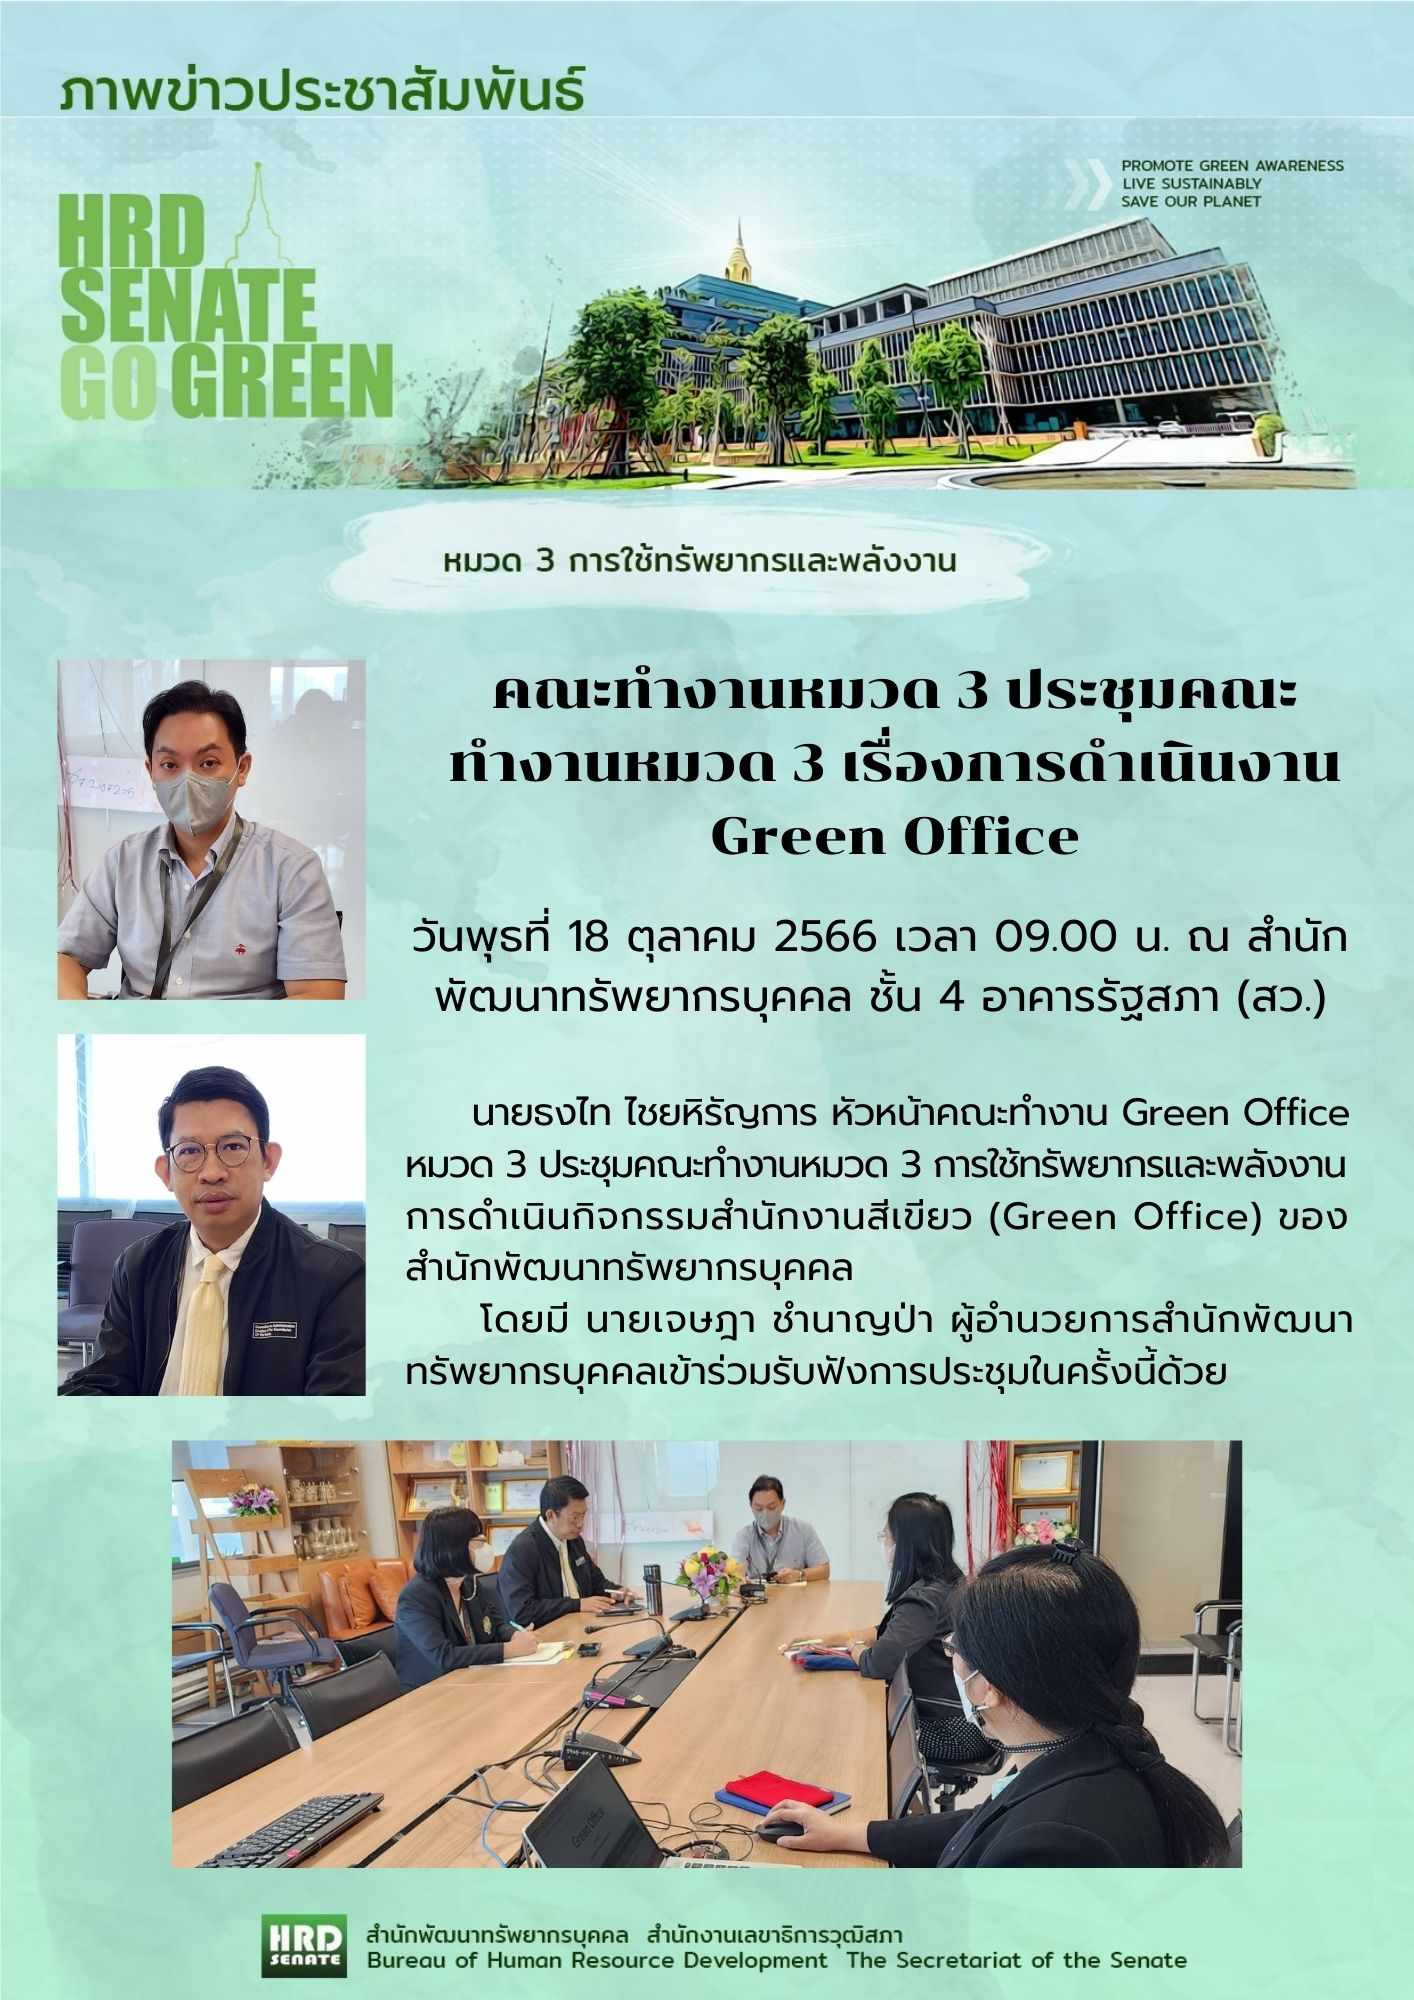 ประชุมคณะทำงาน Green Office หมวด 1 ครั้งที่ 1 (18 ต.ค.66)